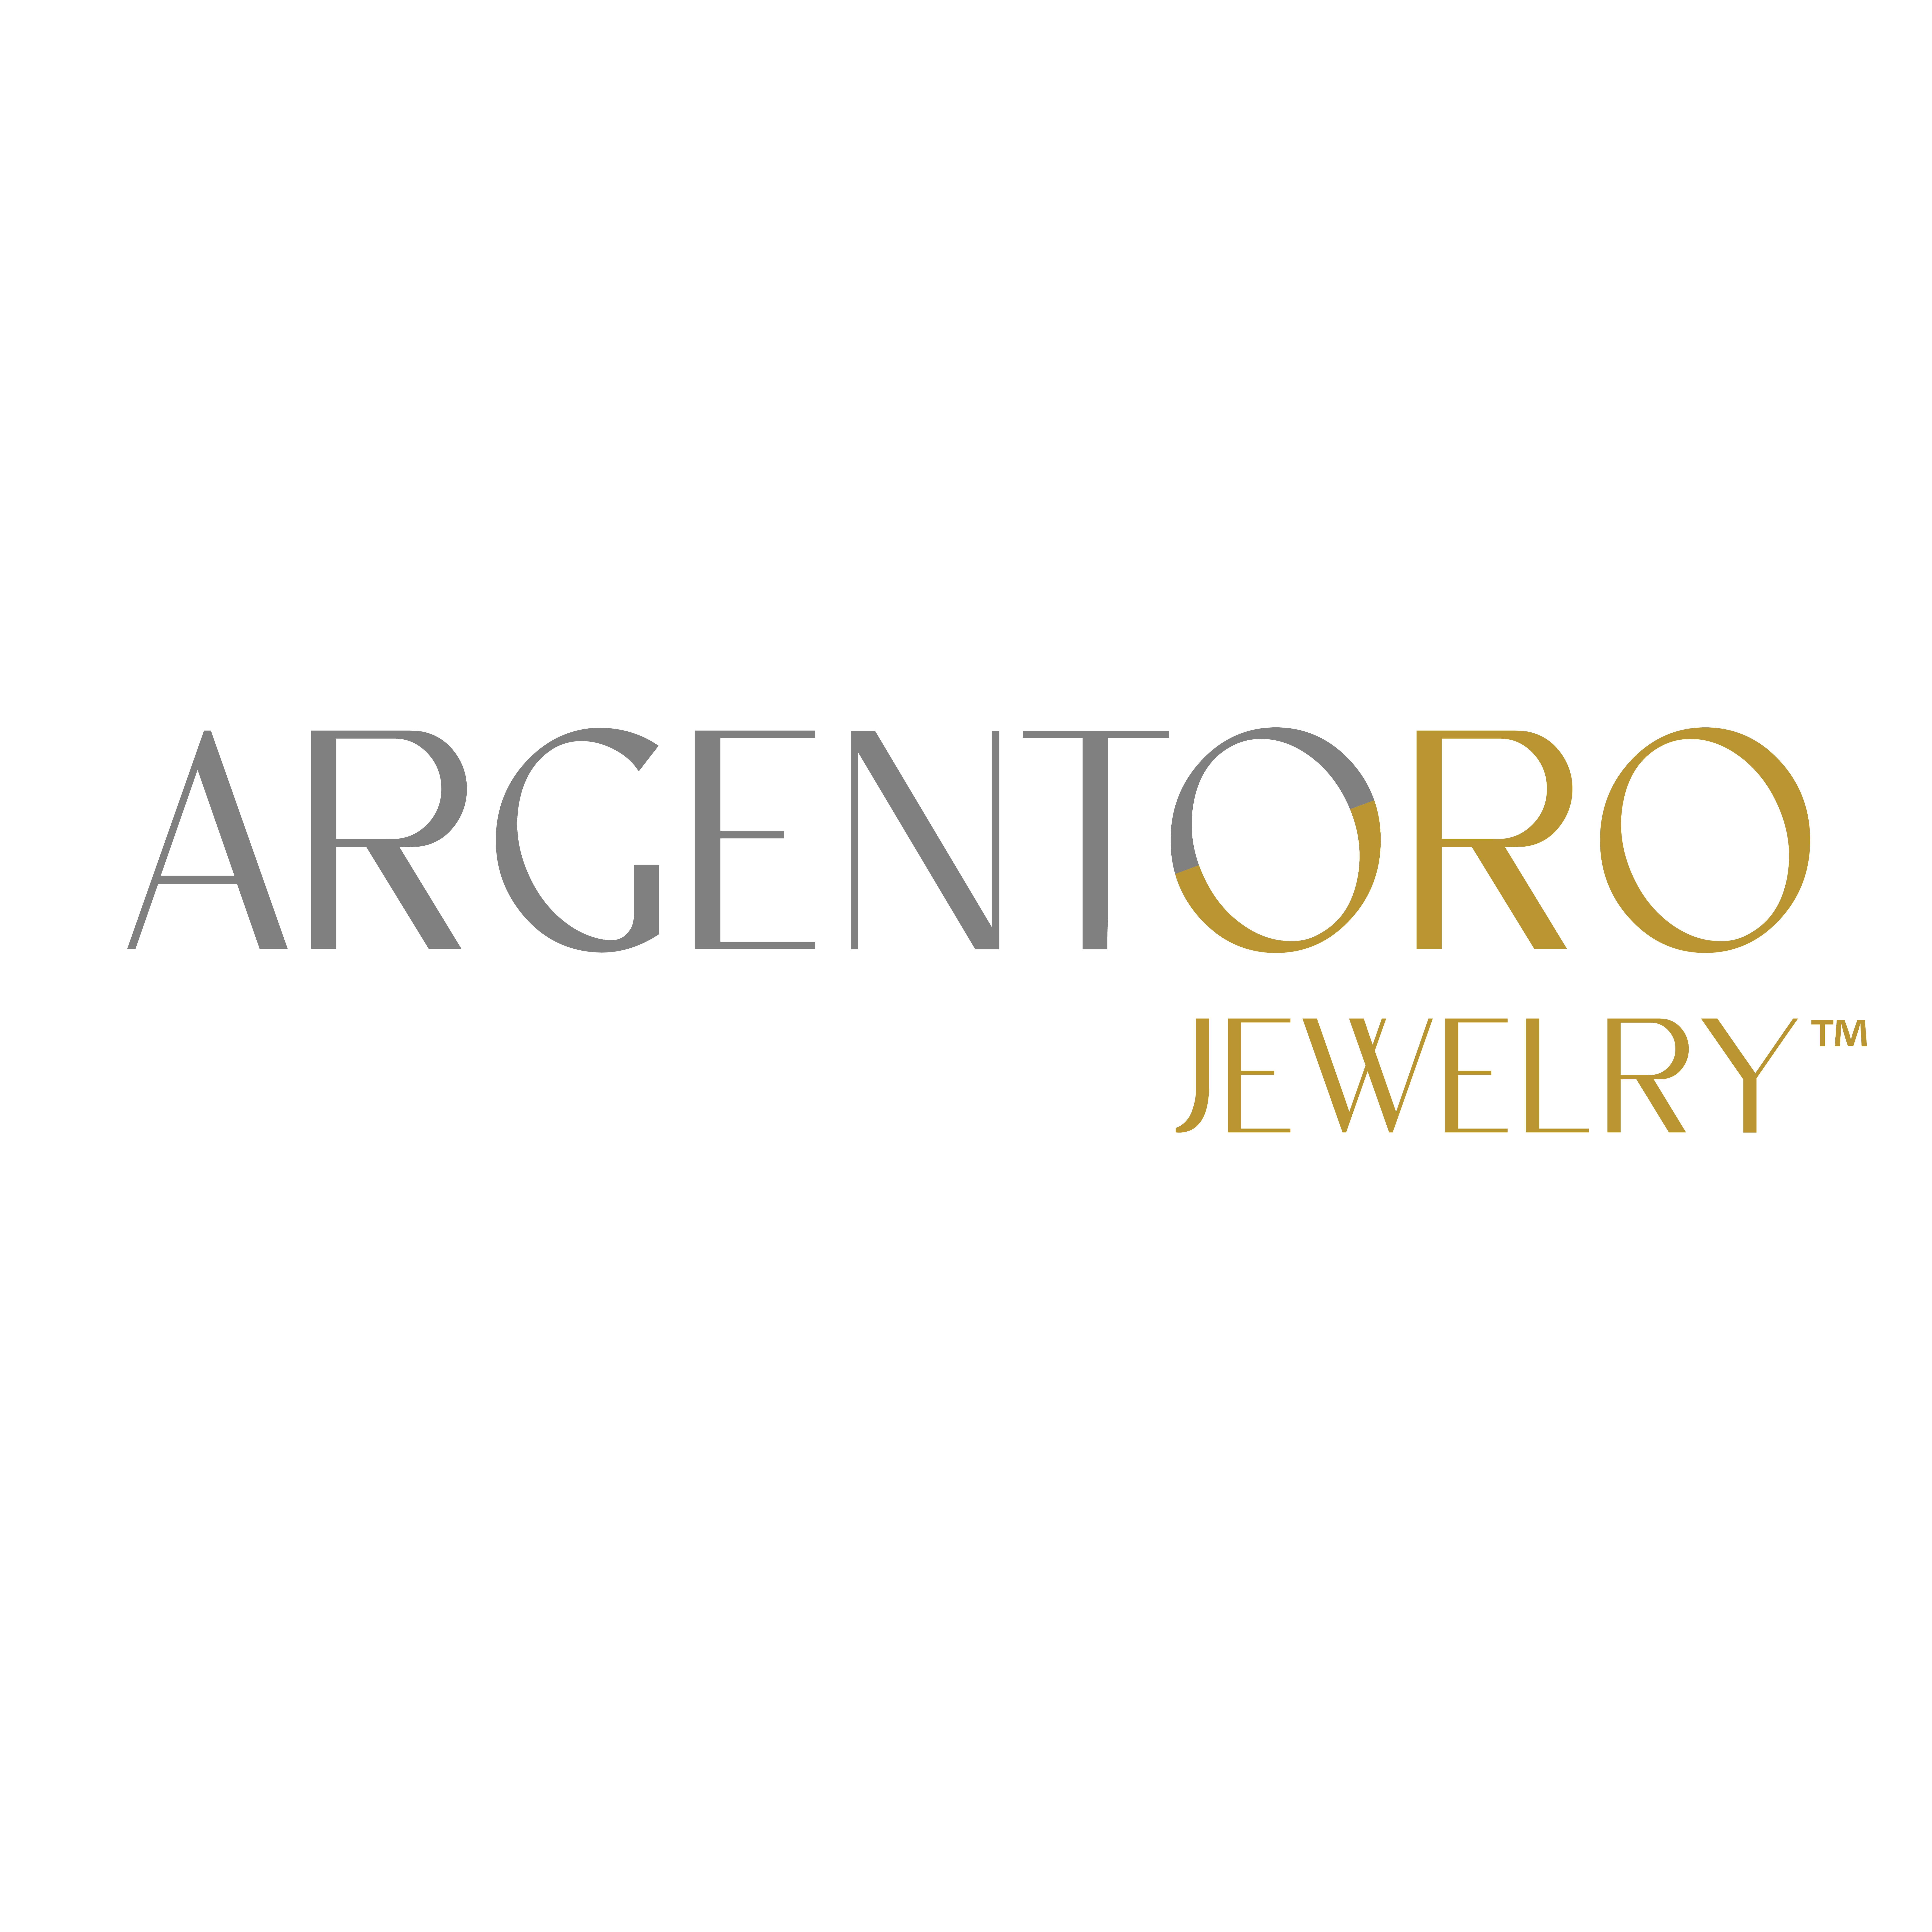 Argentoro Jewelry logo